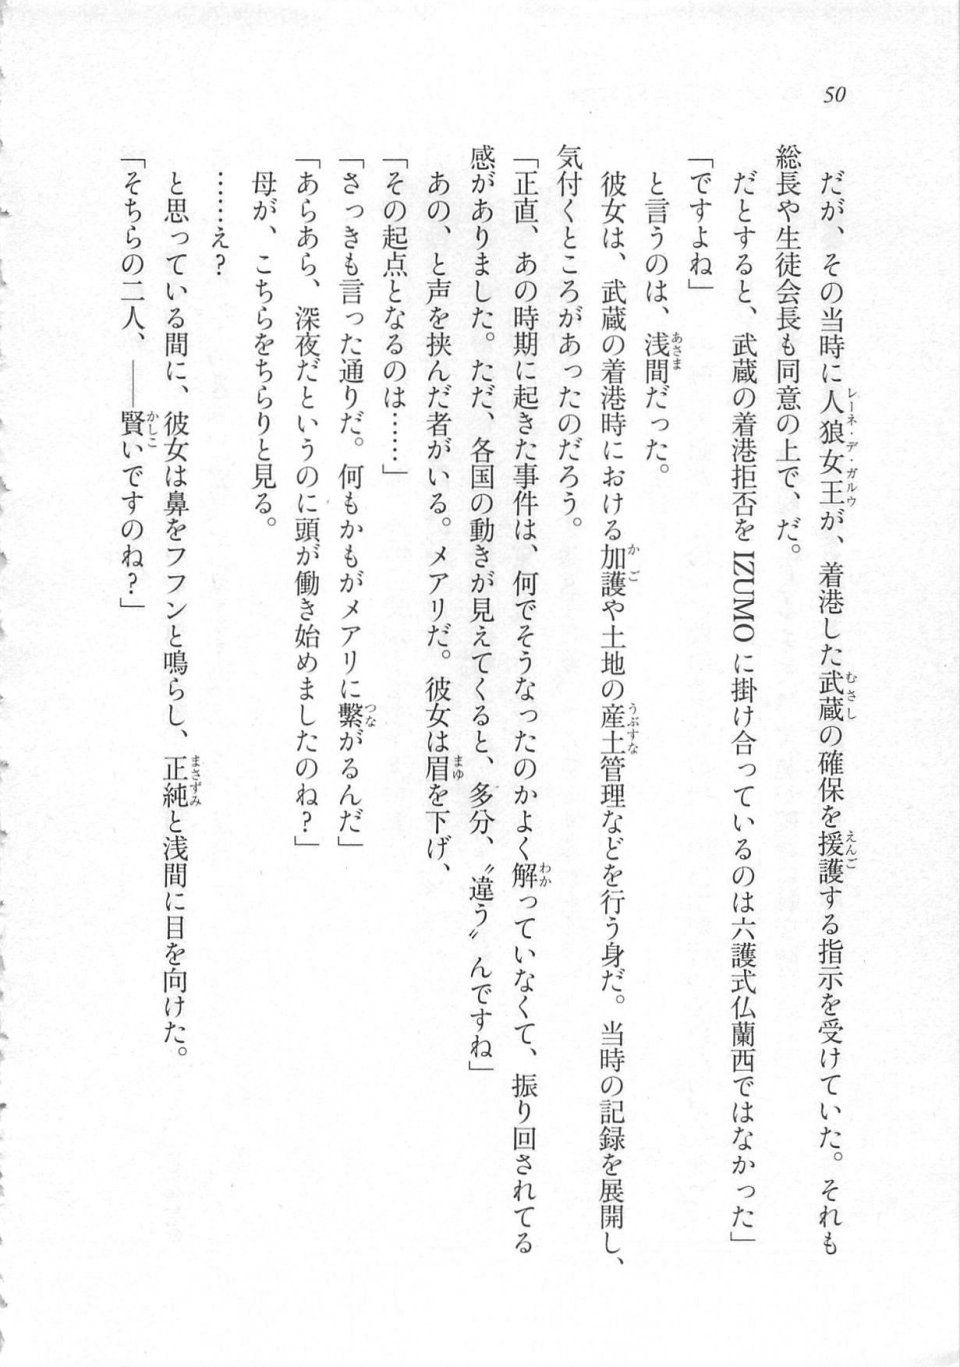 Kyoukai Senjou no Horizon LN Sidestory Vol 3 - Photo #54